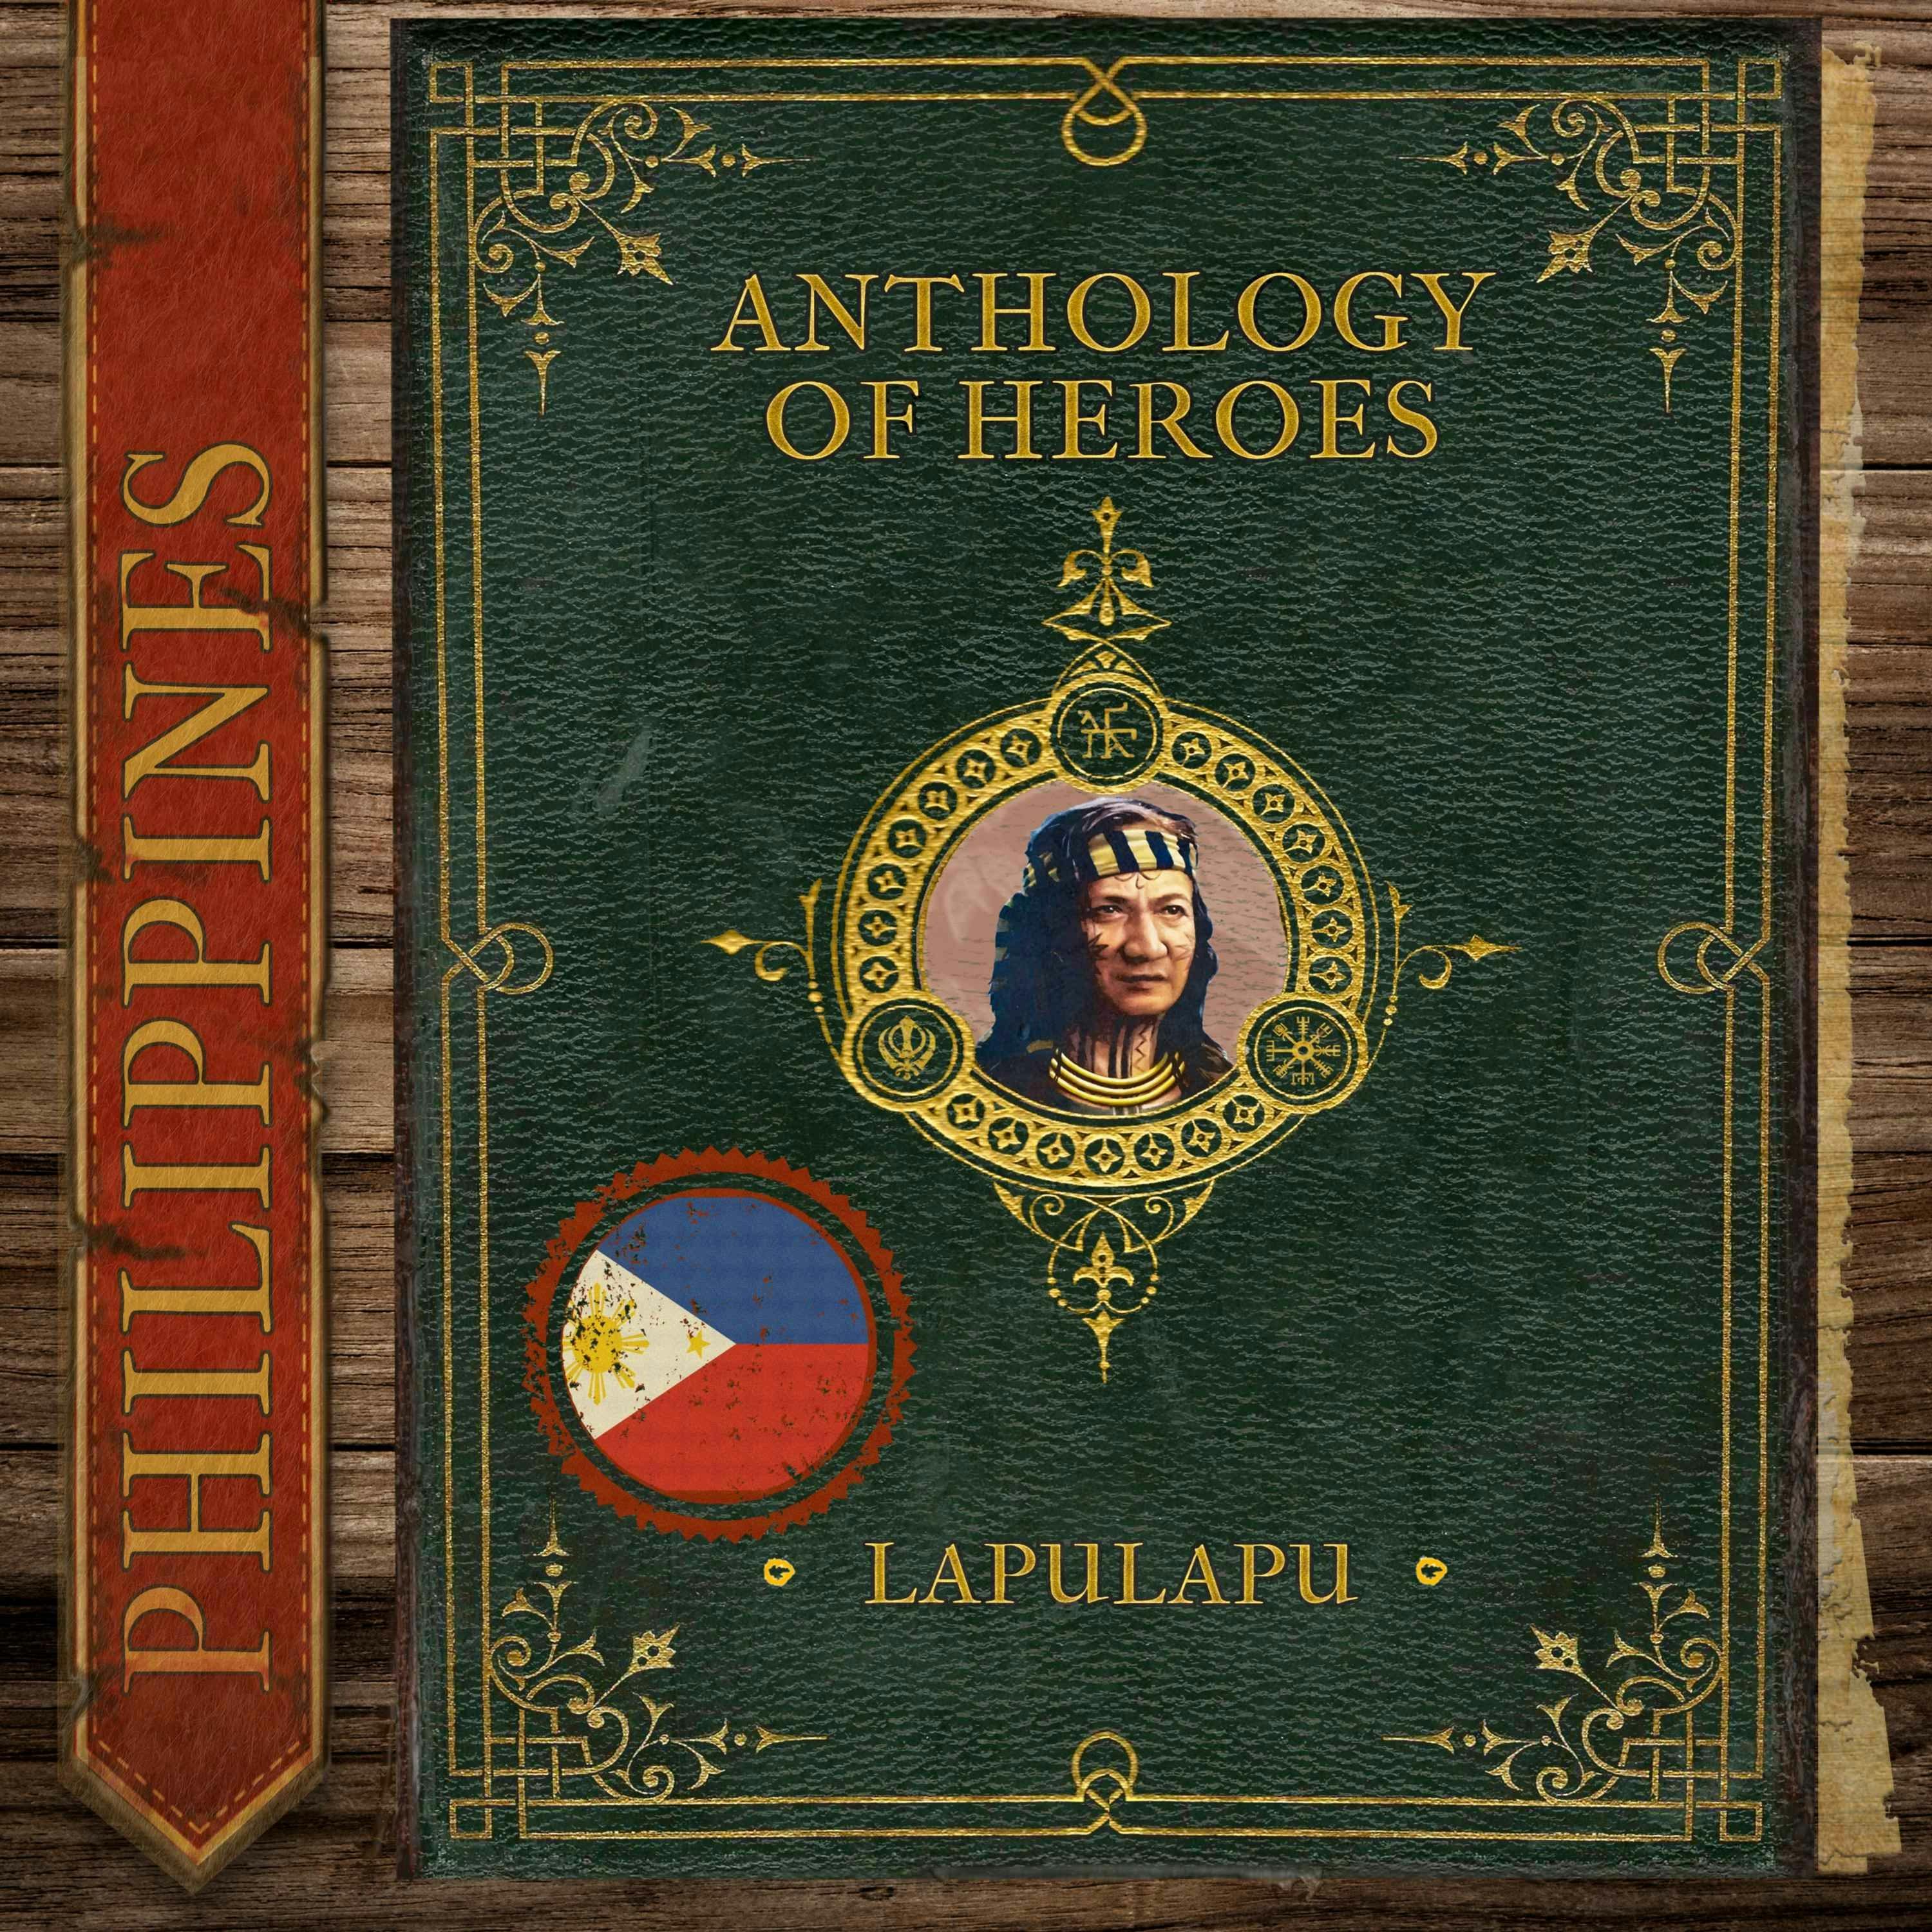 Lapulapu’s Triumph Against Magellan